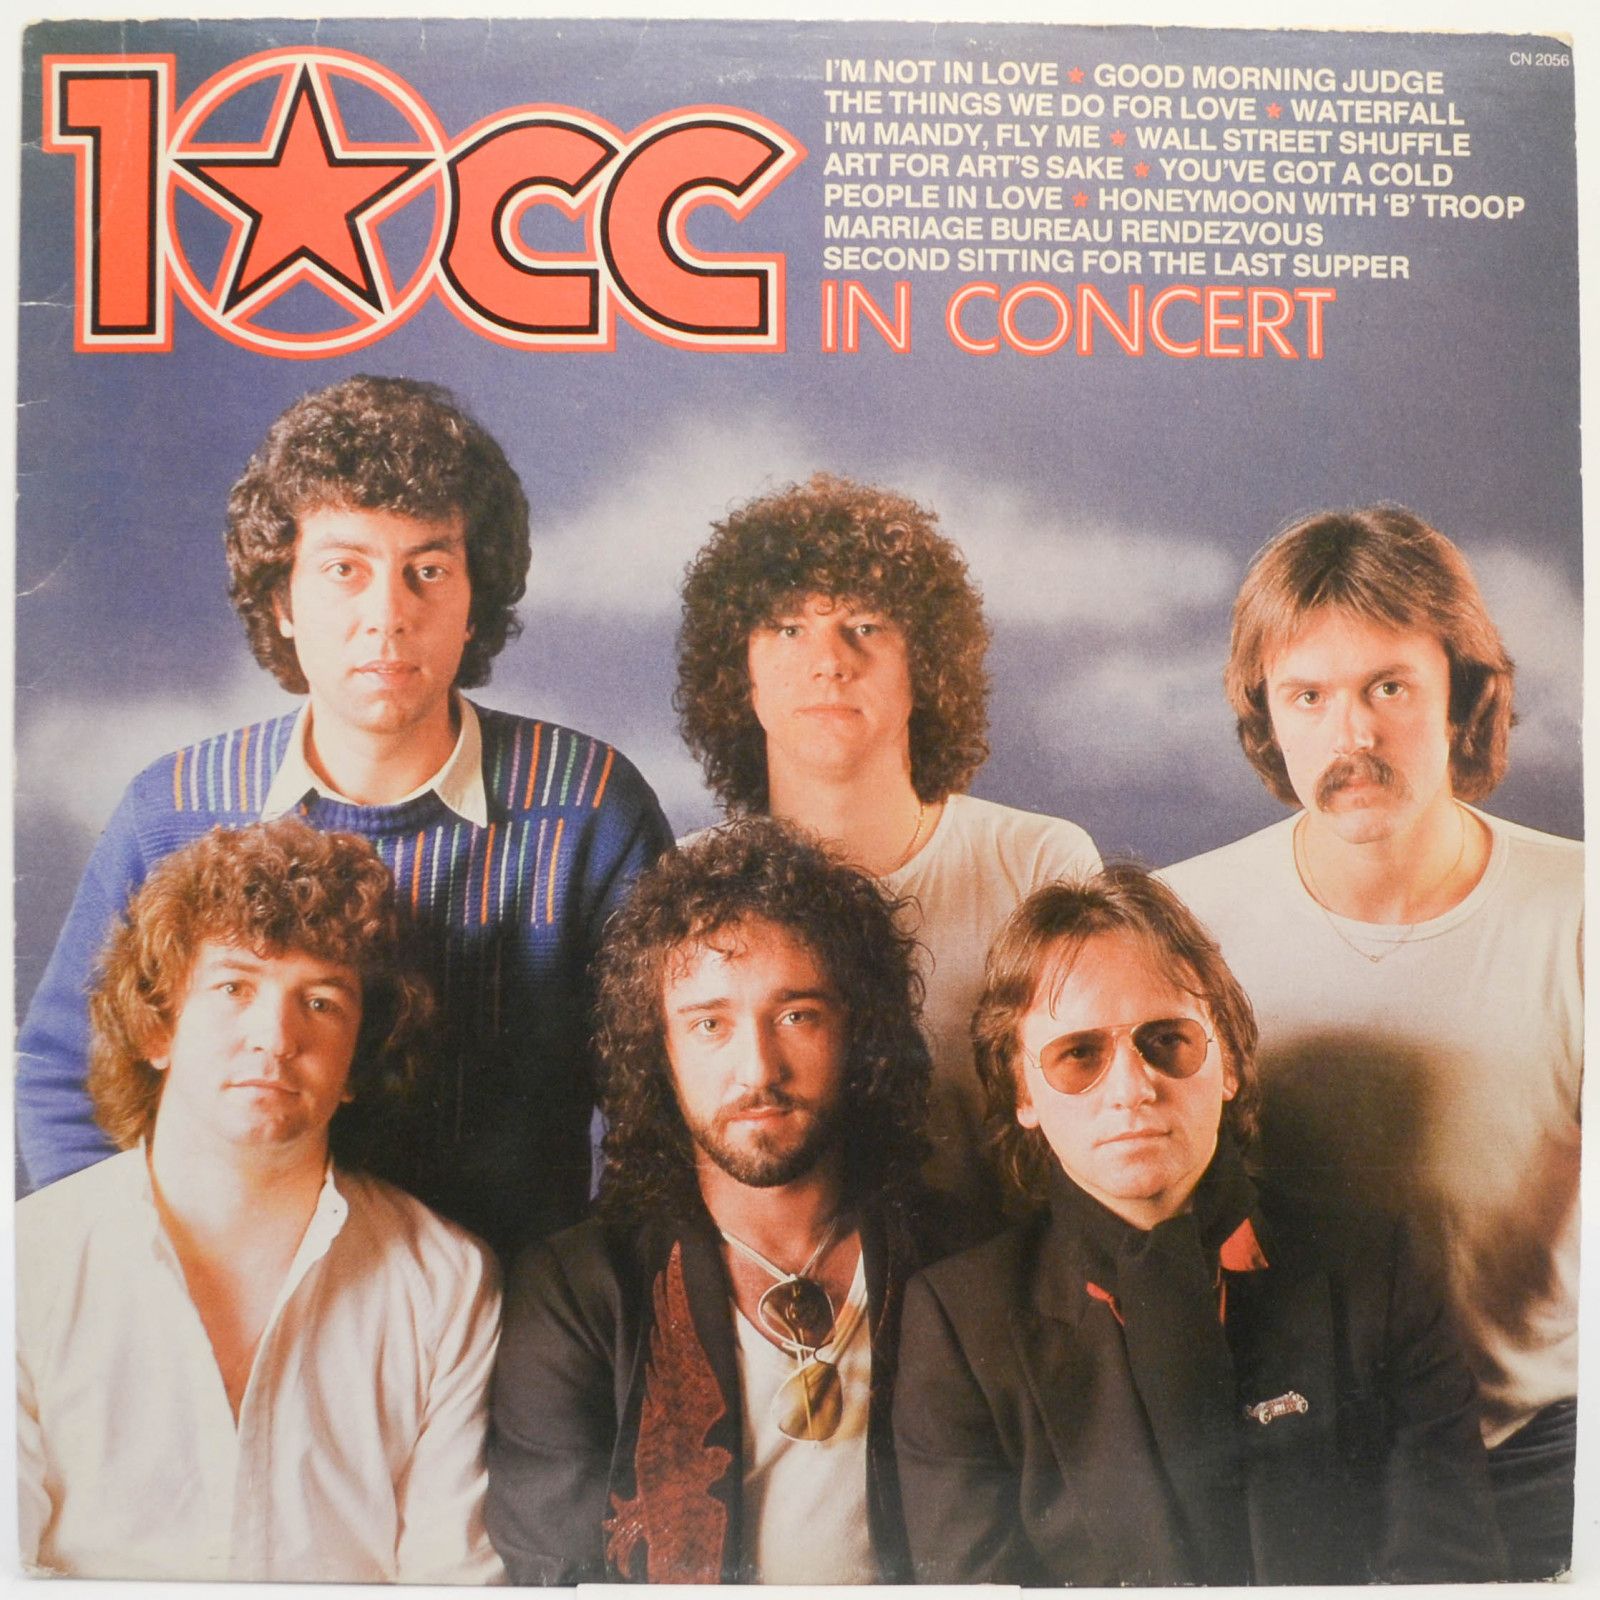 10cc — 10cc In Concert (UK), 1982